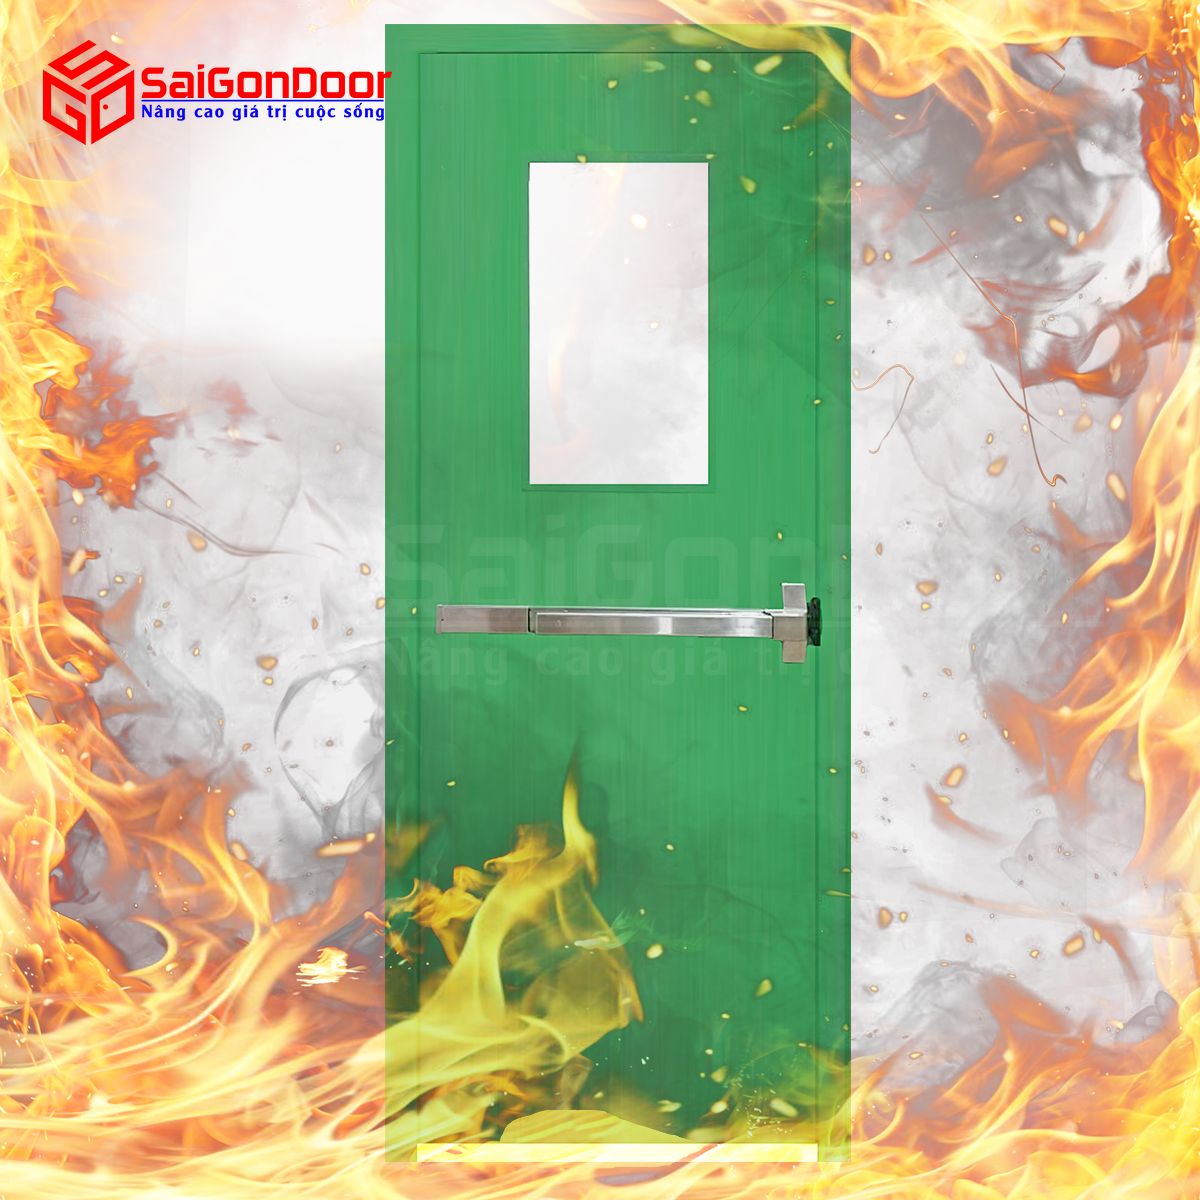 Một số quy định cần tuân thủ cho cửa chống cháy